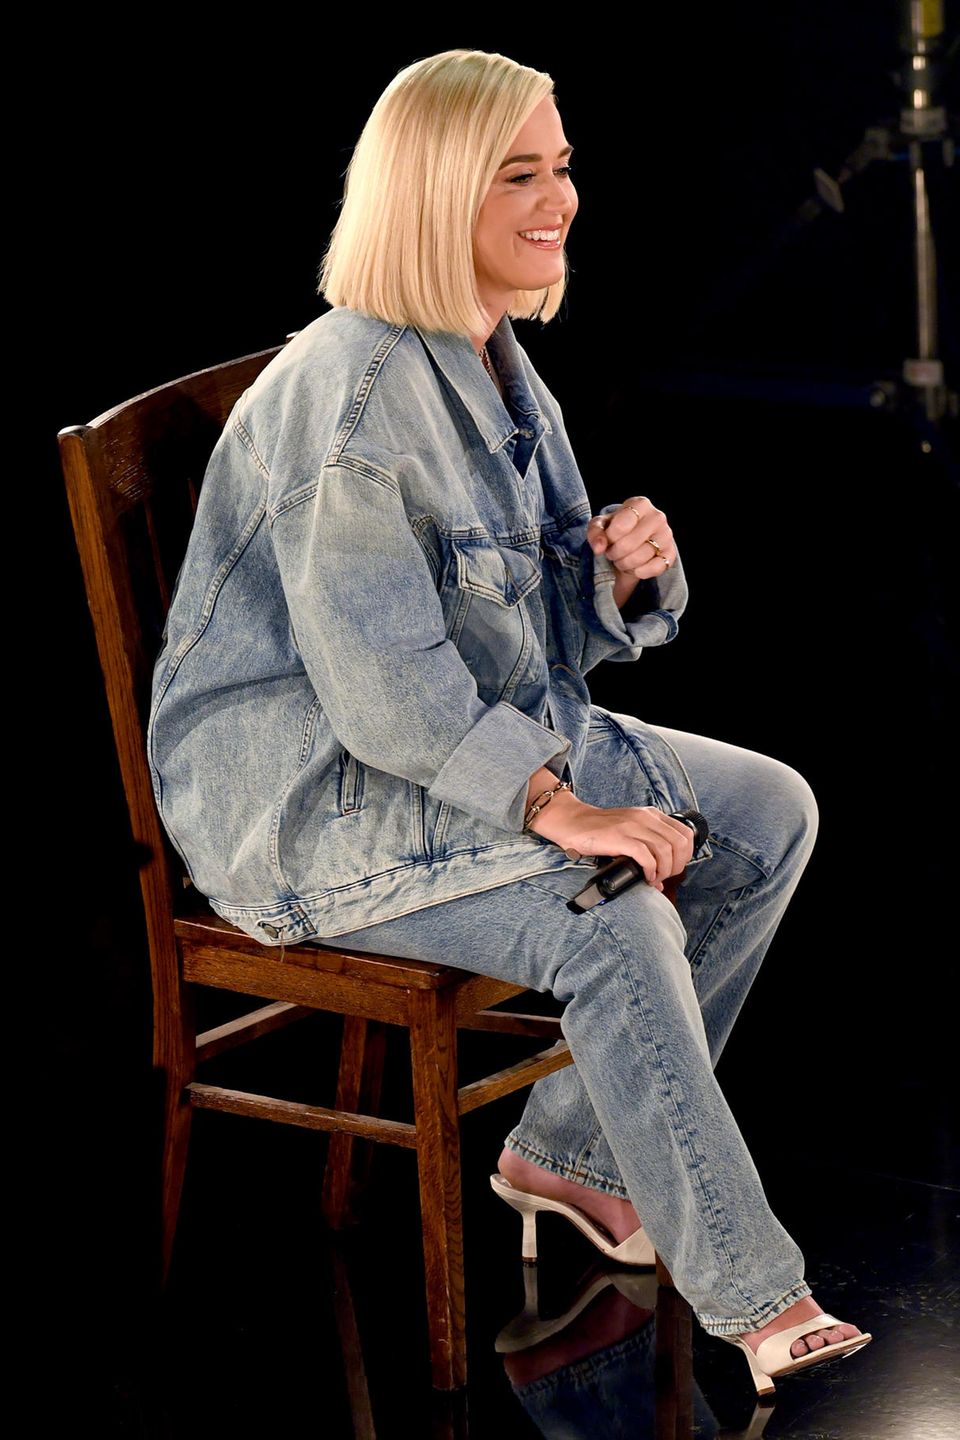 Bei den American Music Awards zeigt sich Katy Perry in einem All-Denim-Look aus lässiger Hose und XXL-Jeansjacke. In Sachen Make-up setzt die Sängerin auf den natürlichen Look, ihr schulterlanger Bob ist glatt gestylt.